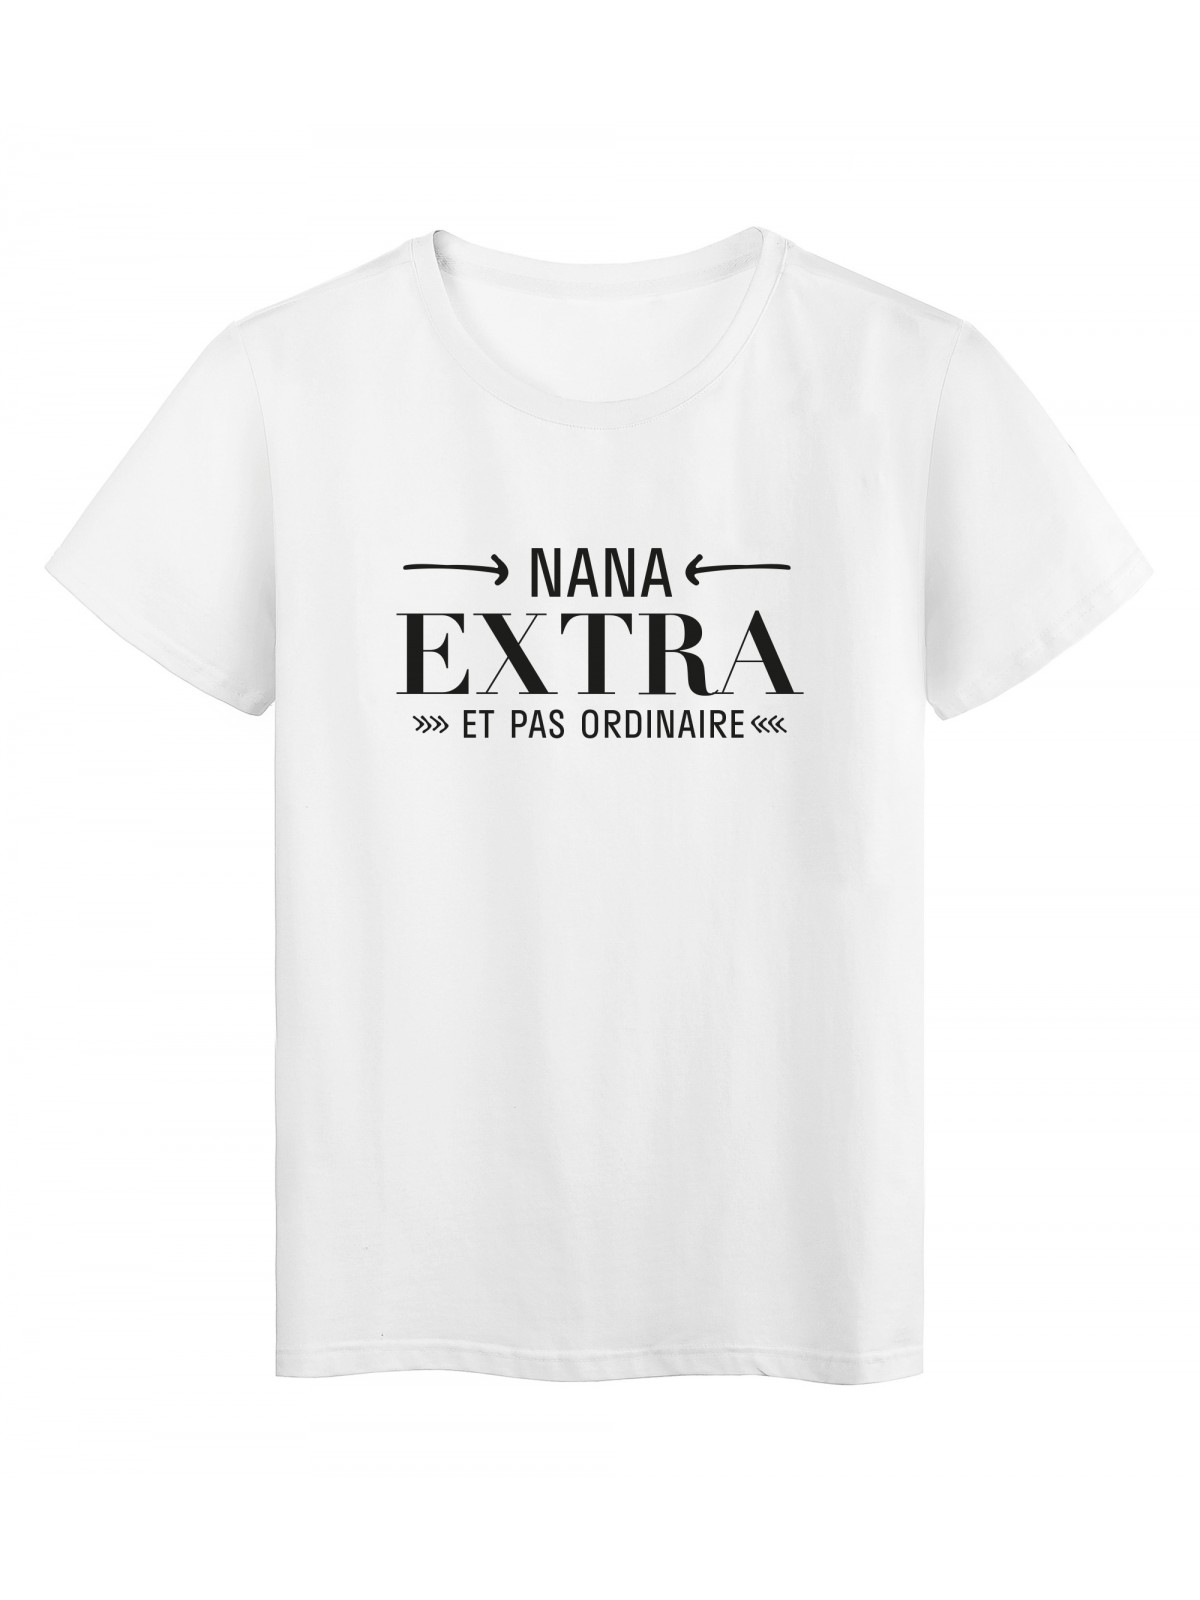 T-Shirt imprimÃ© citation humour nana extra et pas ordinaire